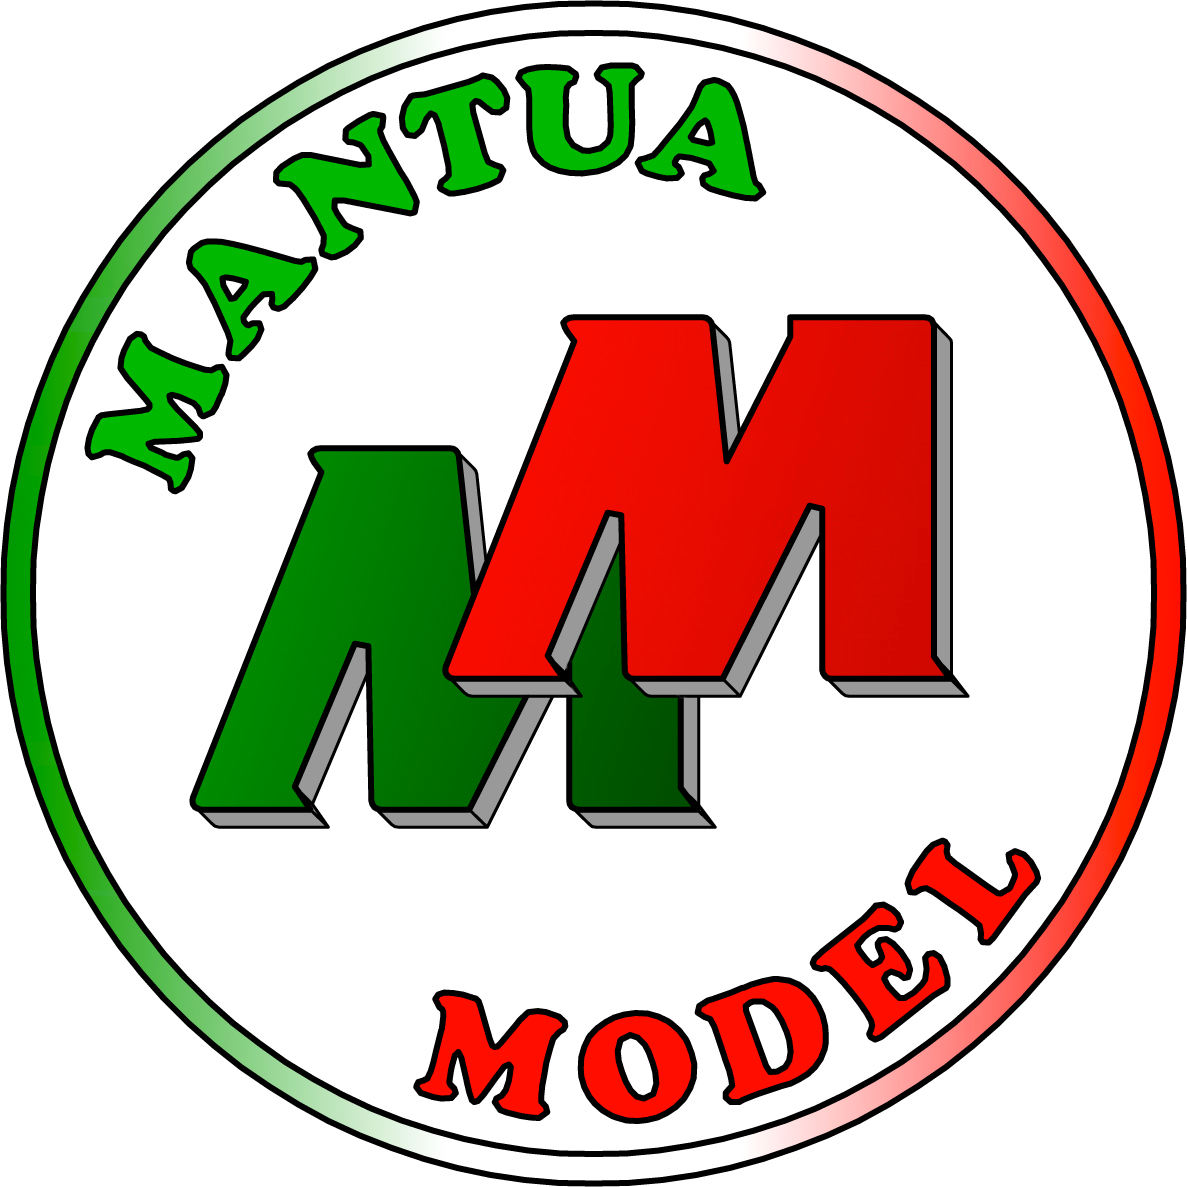 Mantua Model Shop